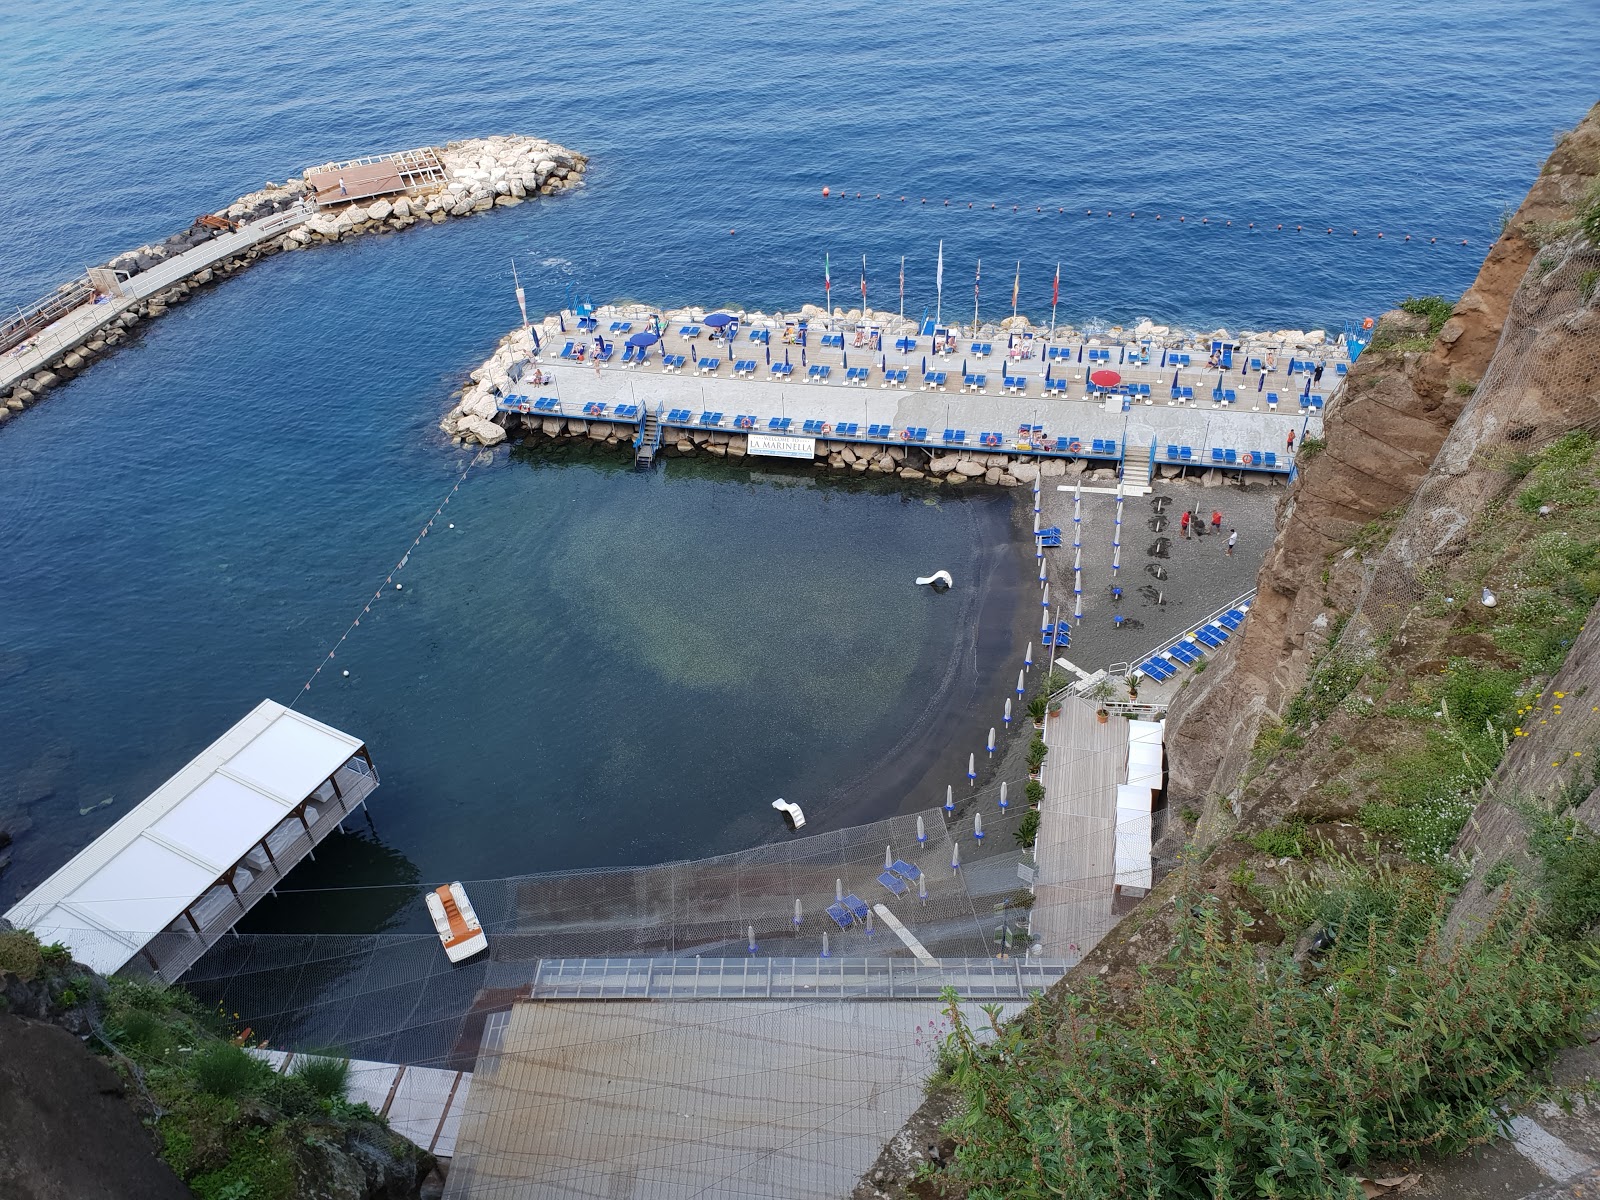 Zdjęcie Spiaggia La Marinella z powierzchnią niebieska woda